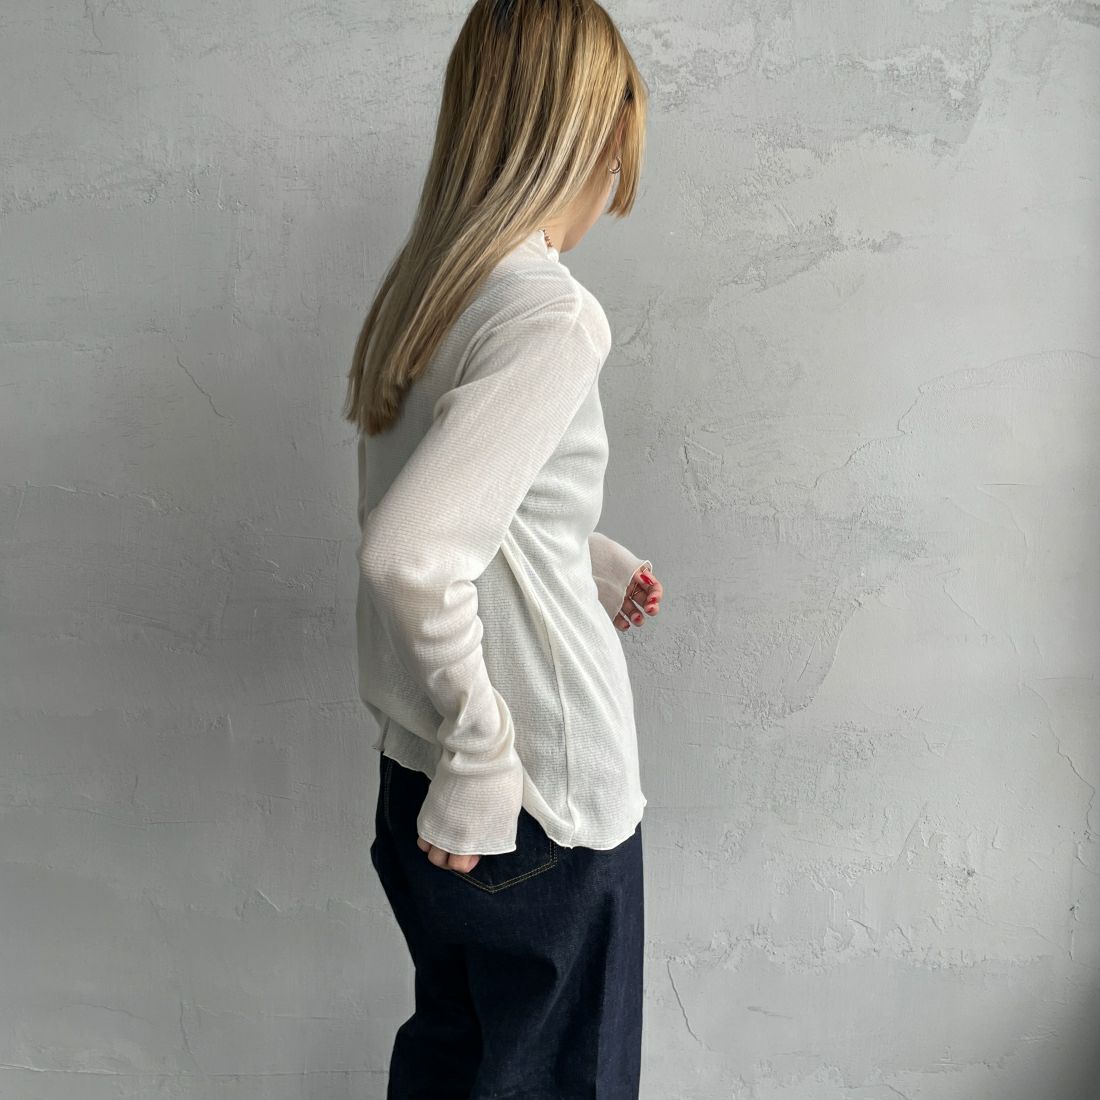 Jeans Factory Clothes [ジーンズファクトリークローズ] ハイネック シアーラメTシャツ [21241057] 031 ｵﾌ &&モデル身長：156cm 着用サイズ：F&&